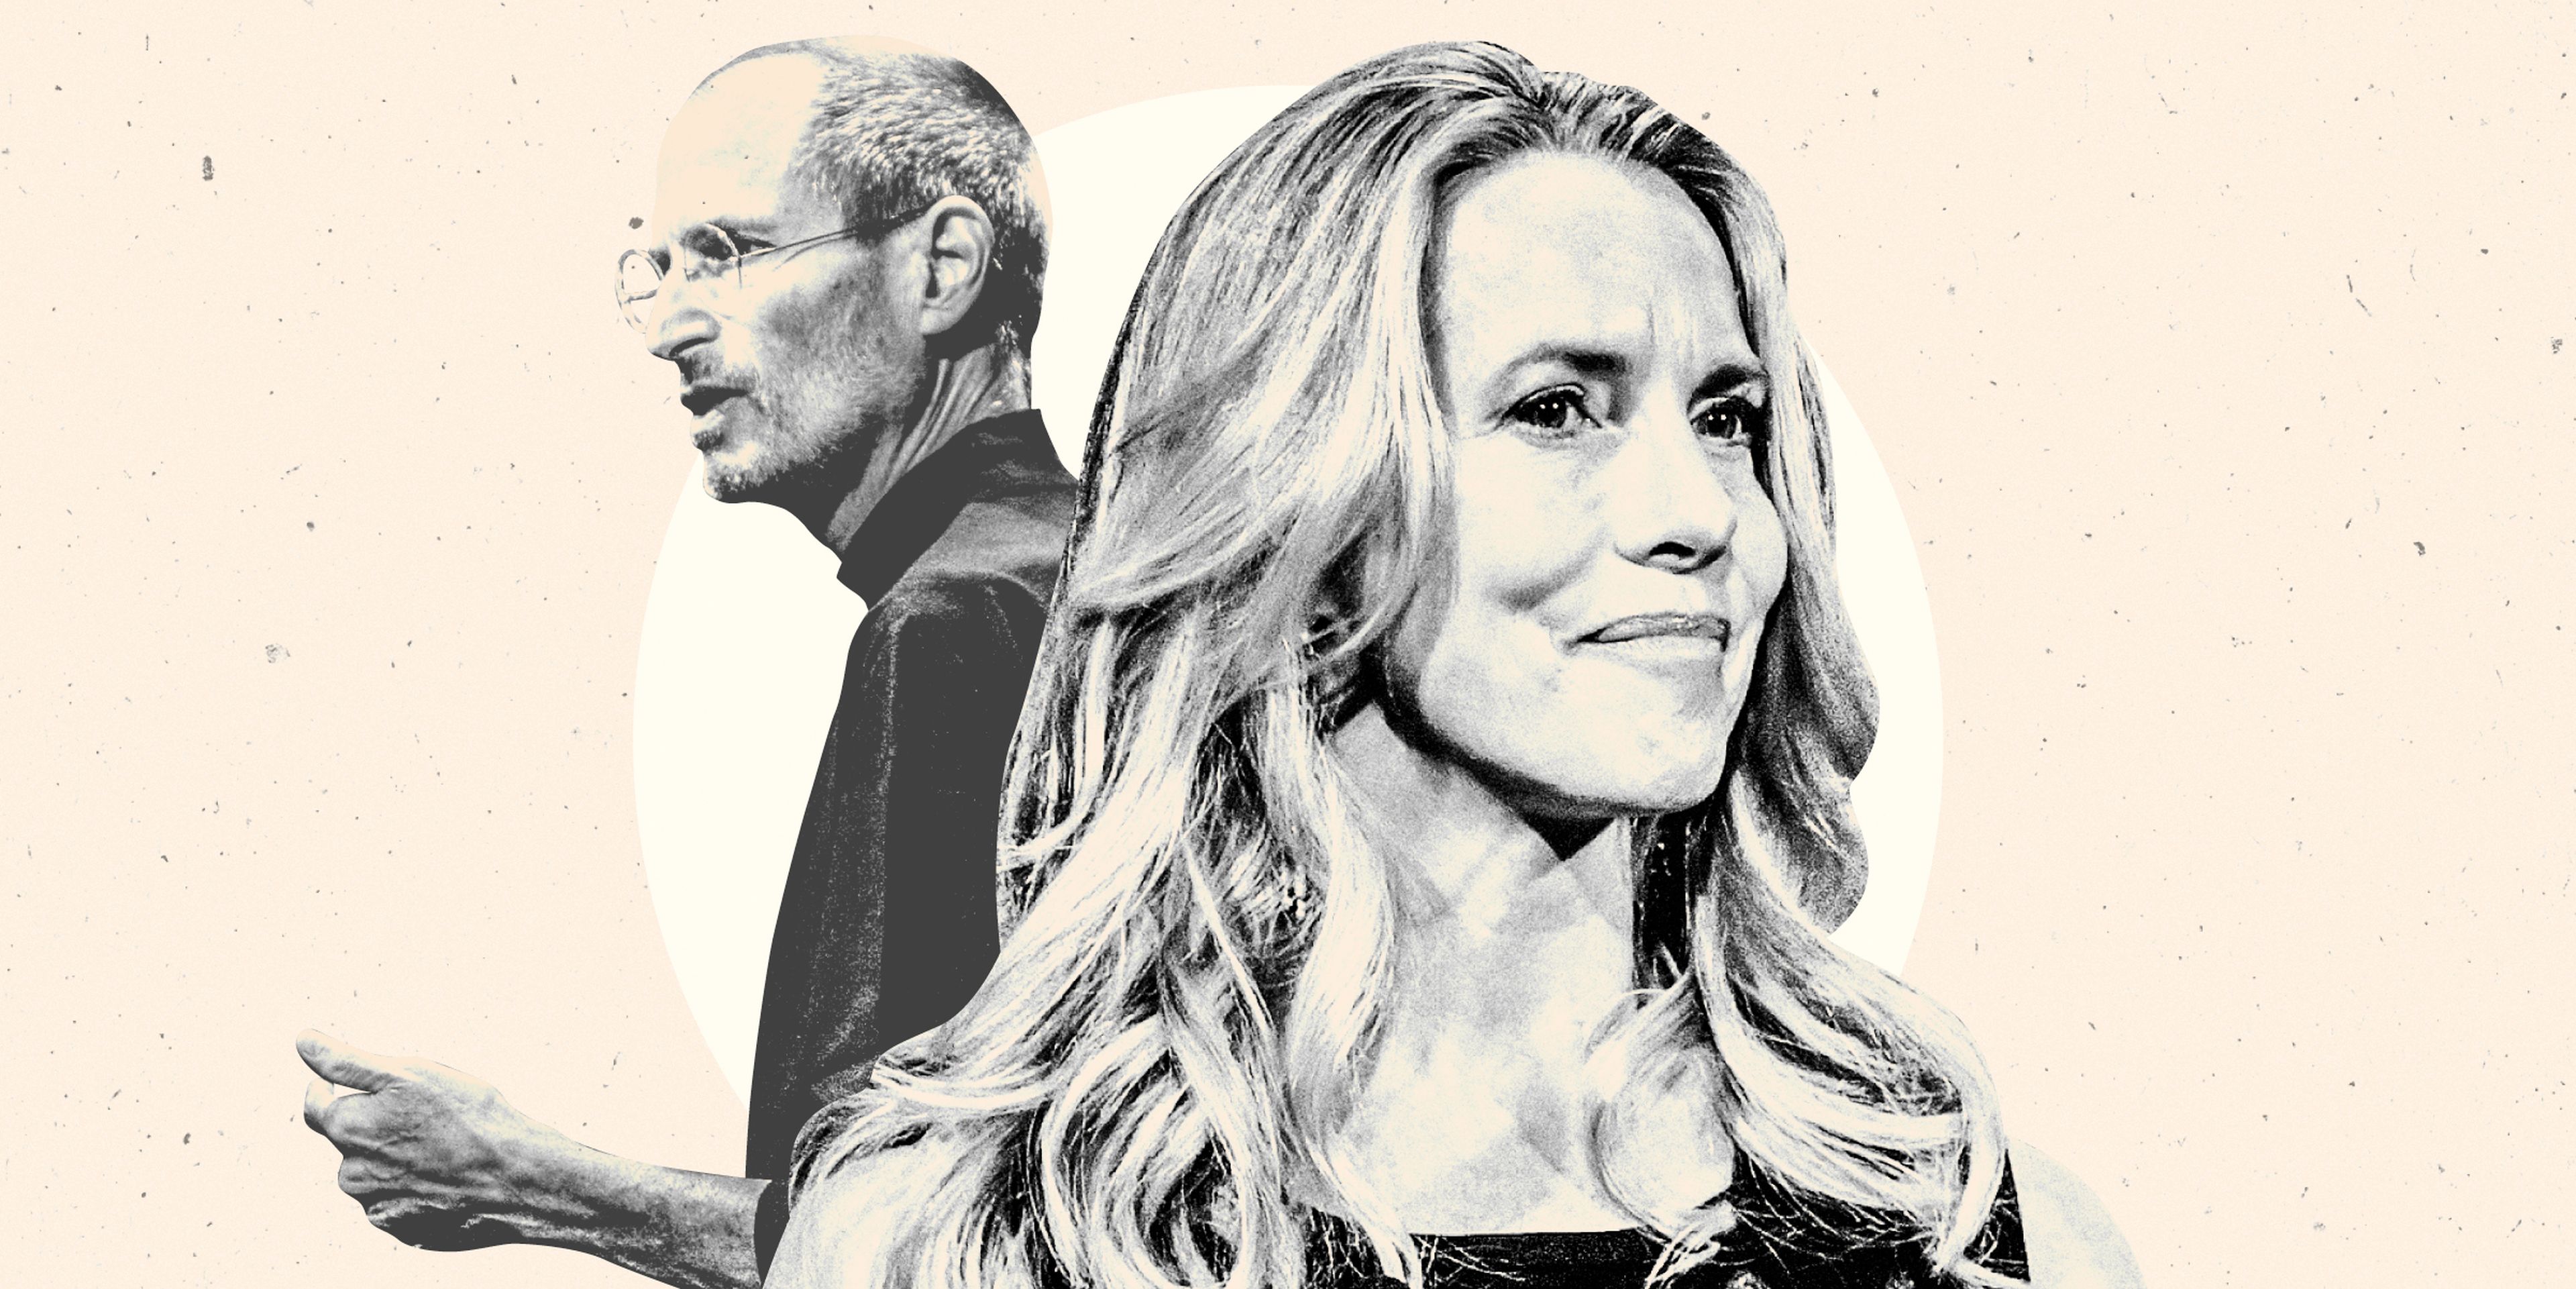 Diez años después de la muerte de Steve Jobs, Laurene Powell Jobs tiene la firme intención de gastar su fortuna.